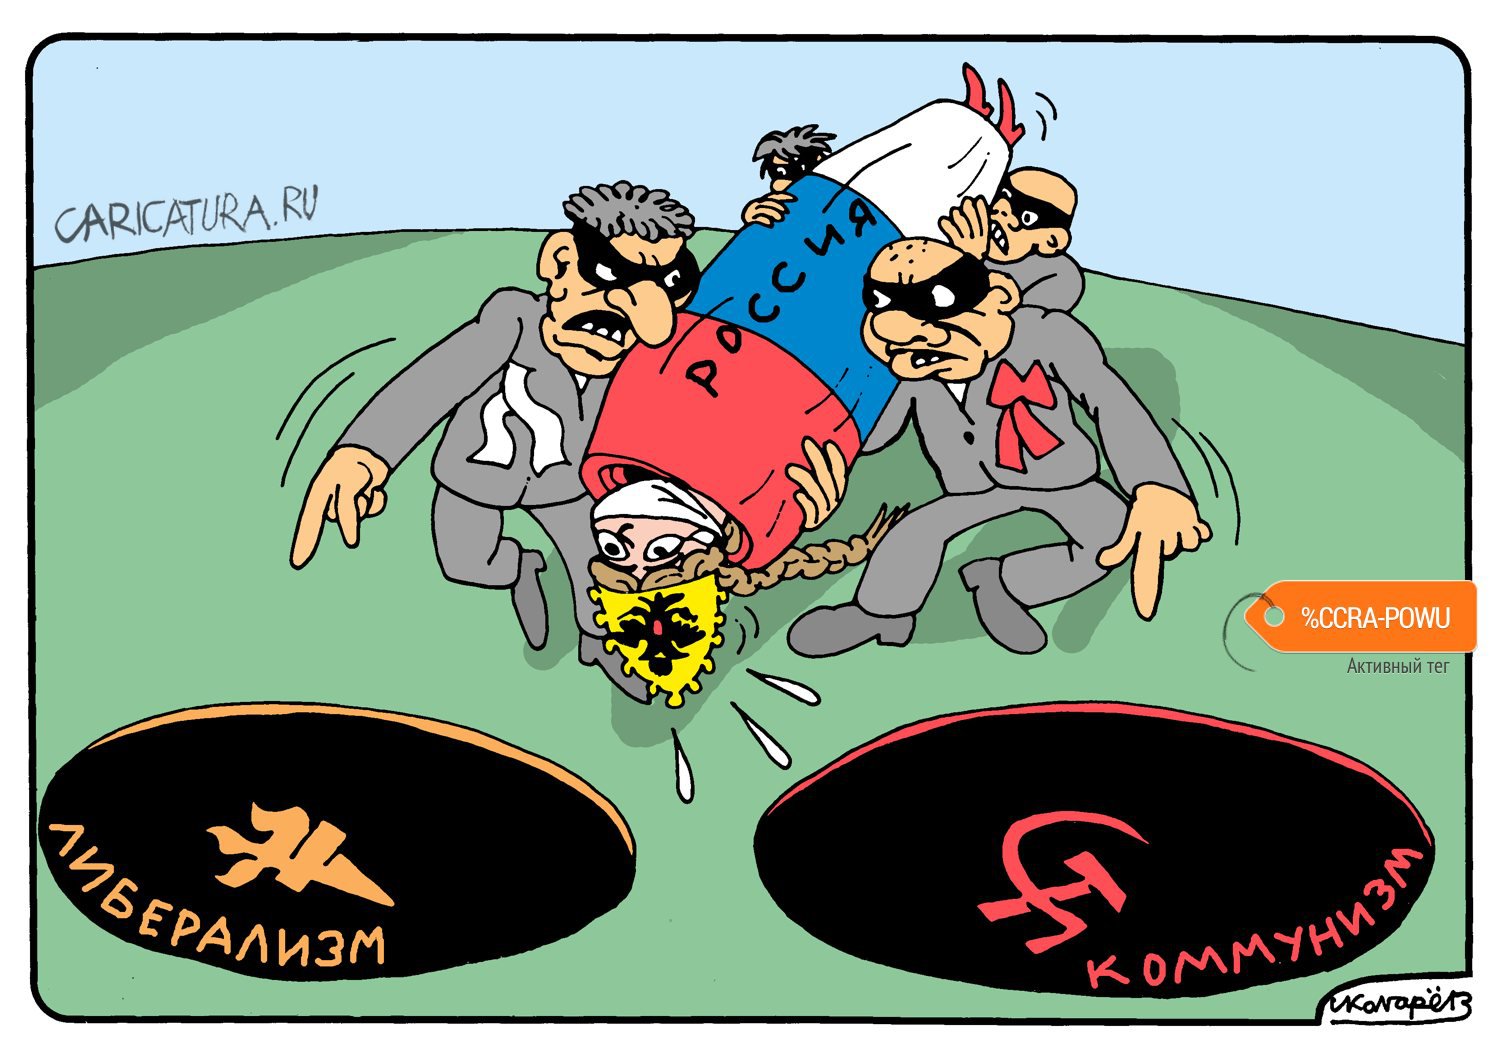 Карикатура "Куда хотят кинуть Россию", Игорь Колгарев